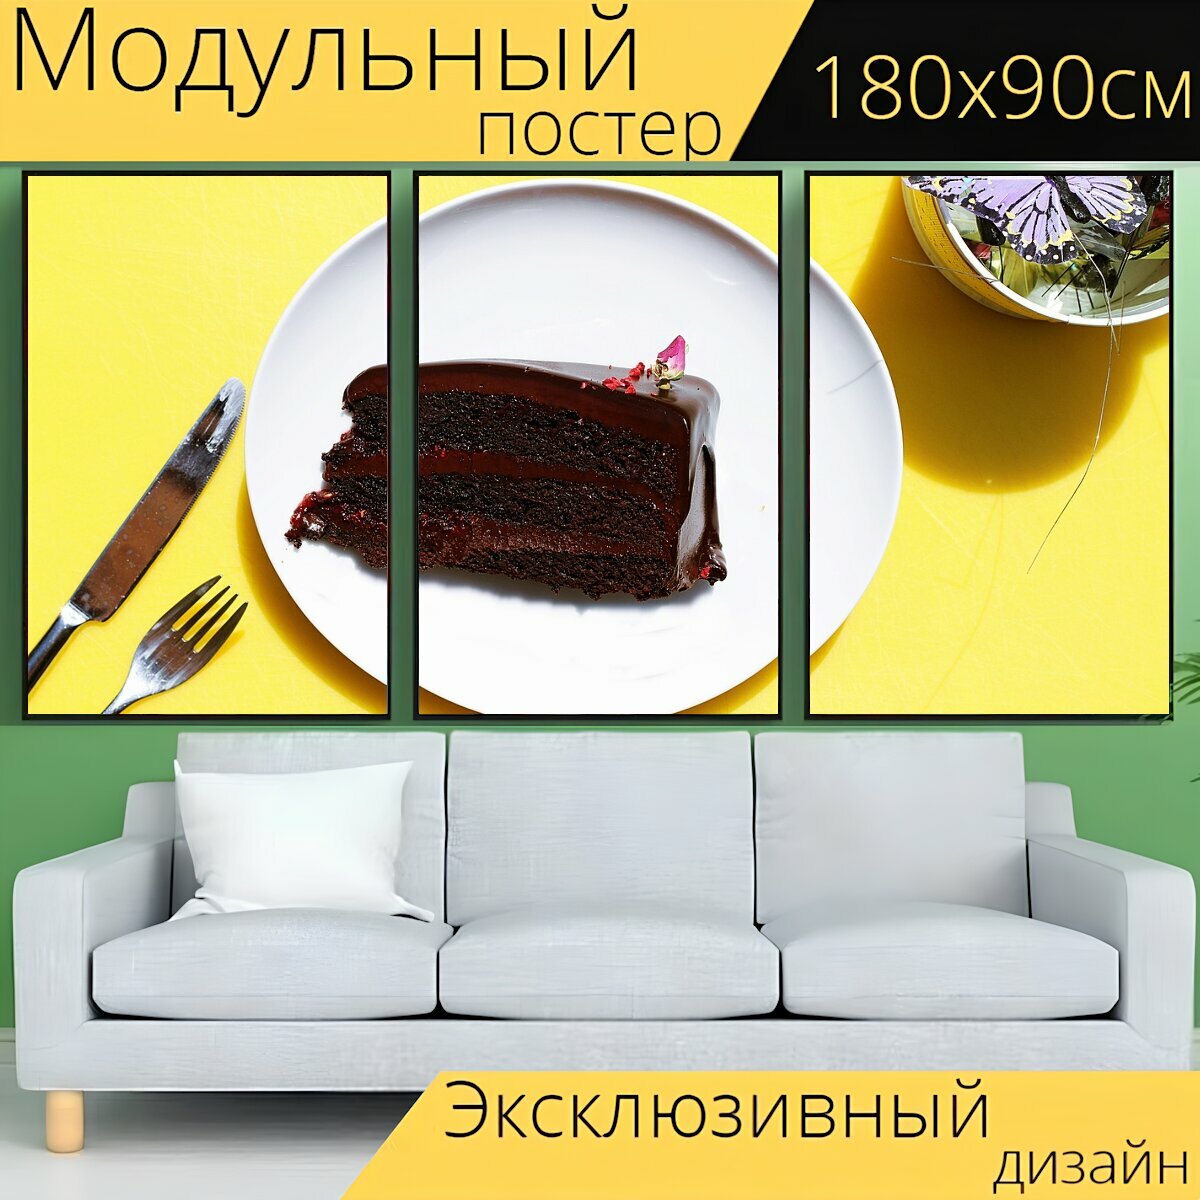 Модульный постер "Вилка, хлеб, нож" 180 x 90 см. для интерьера